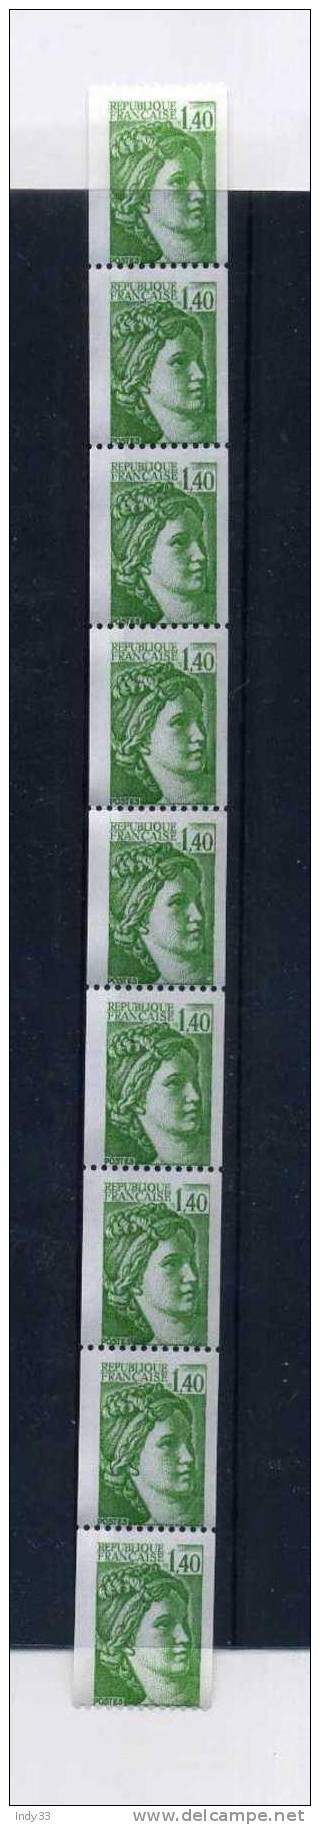 - FRANCE ROULETTE . SABINE DE GANDON N°2157  Y T 1981  NEUFS SANS CHARNIERE - Coil Stamps